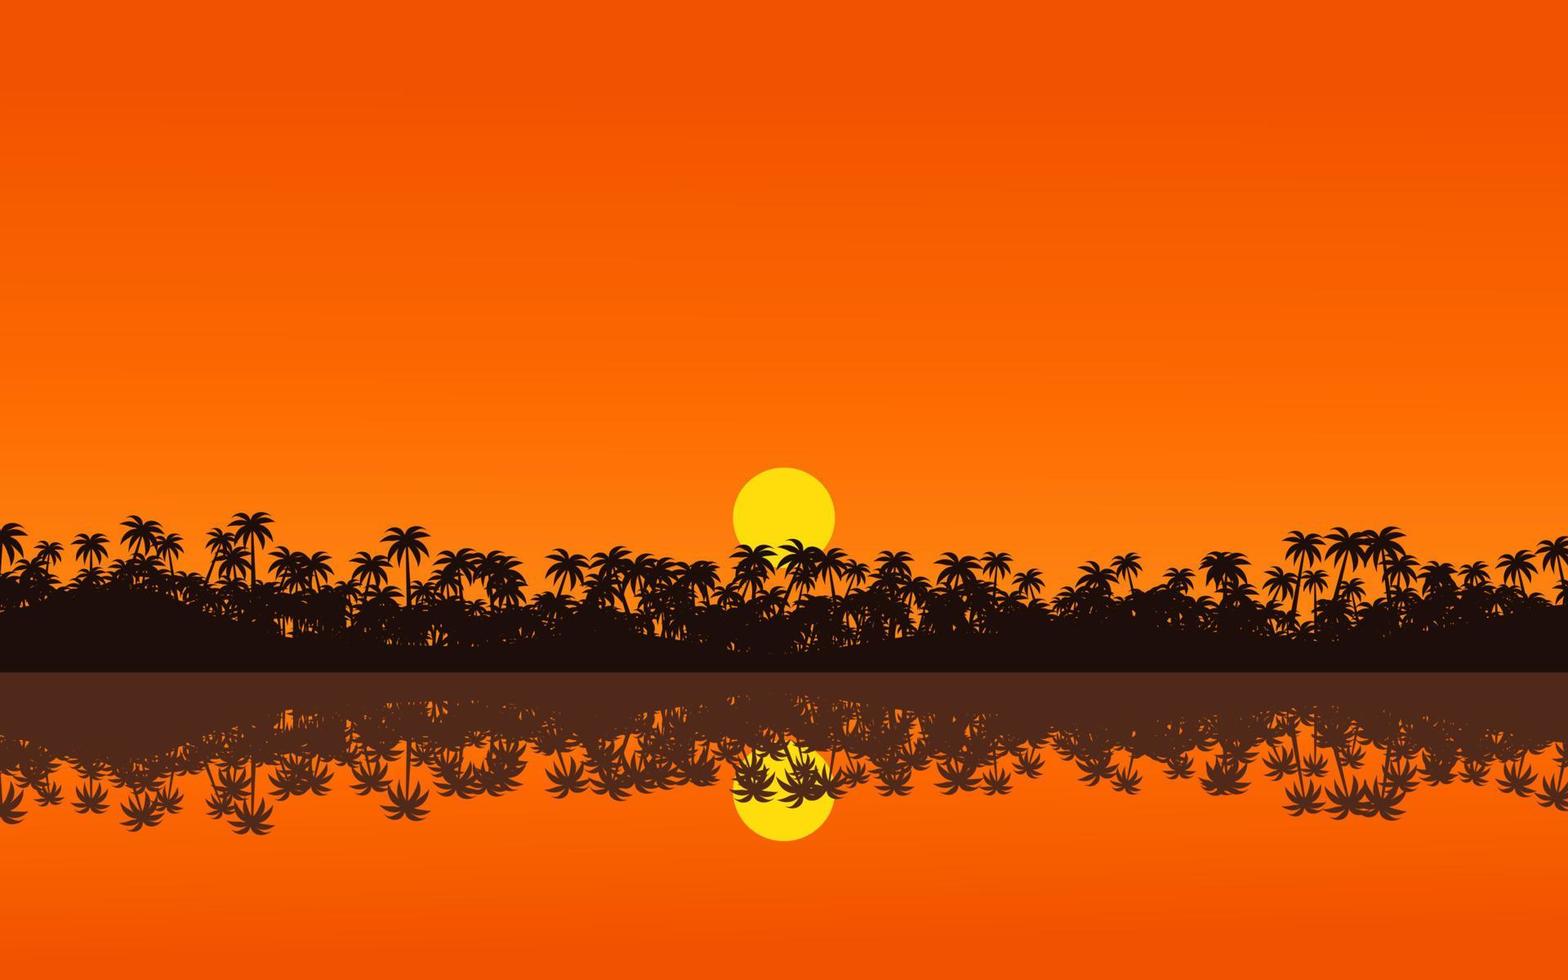 Tropical sunset landscape illustration vector